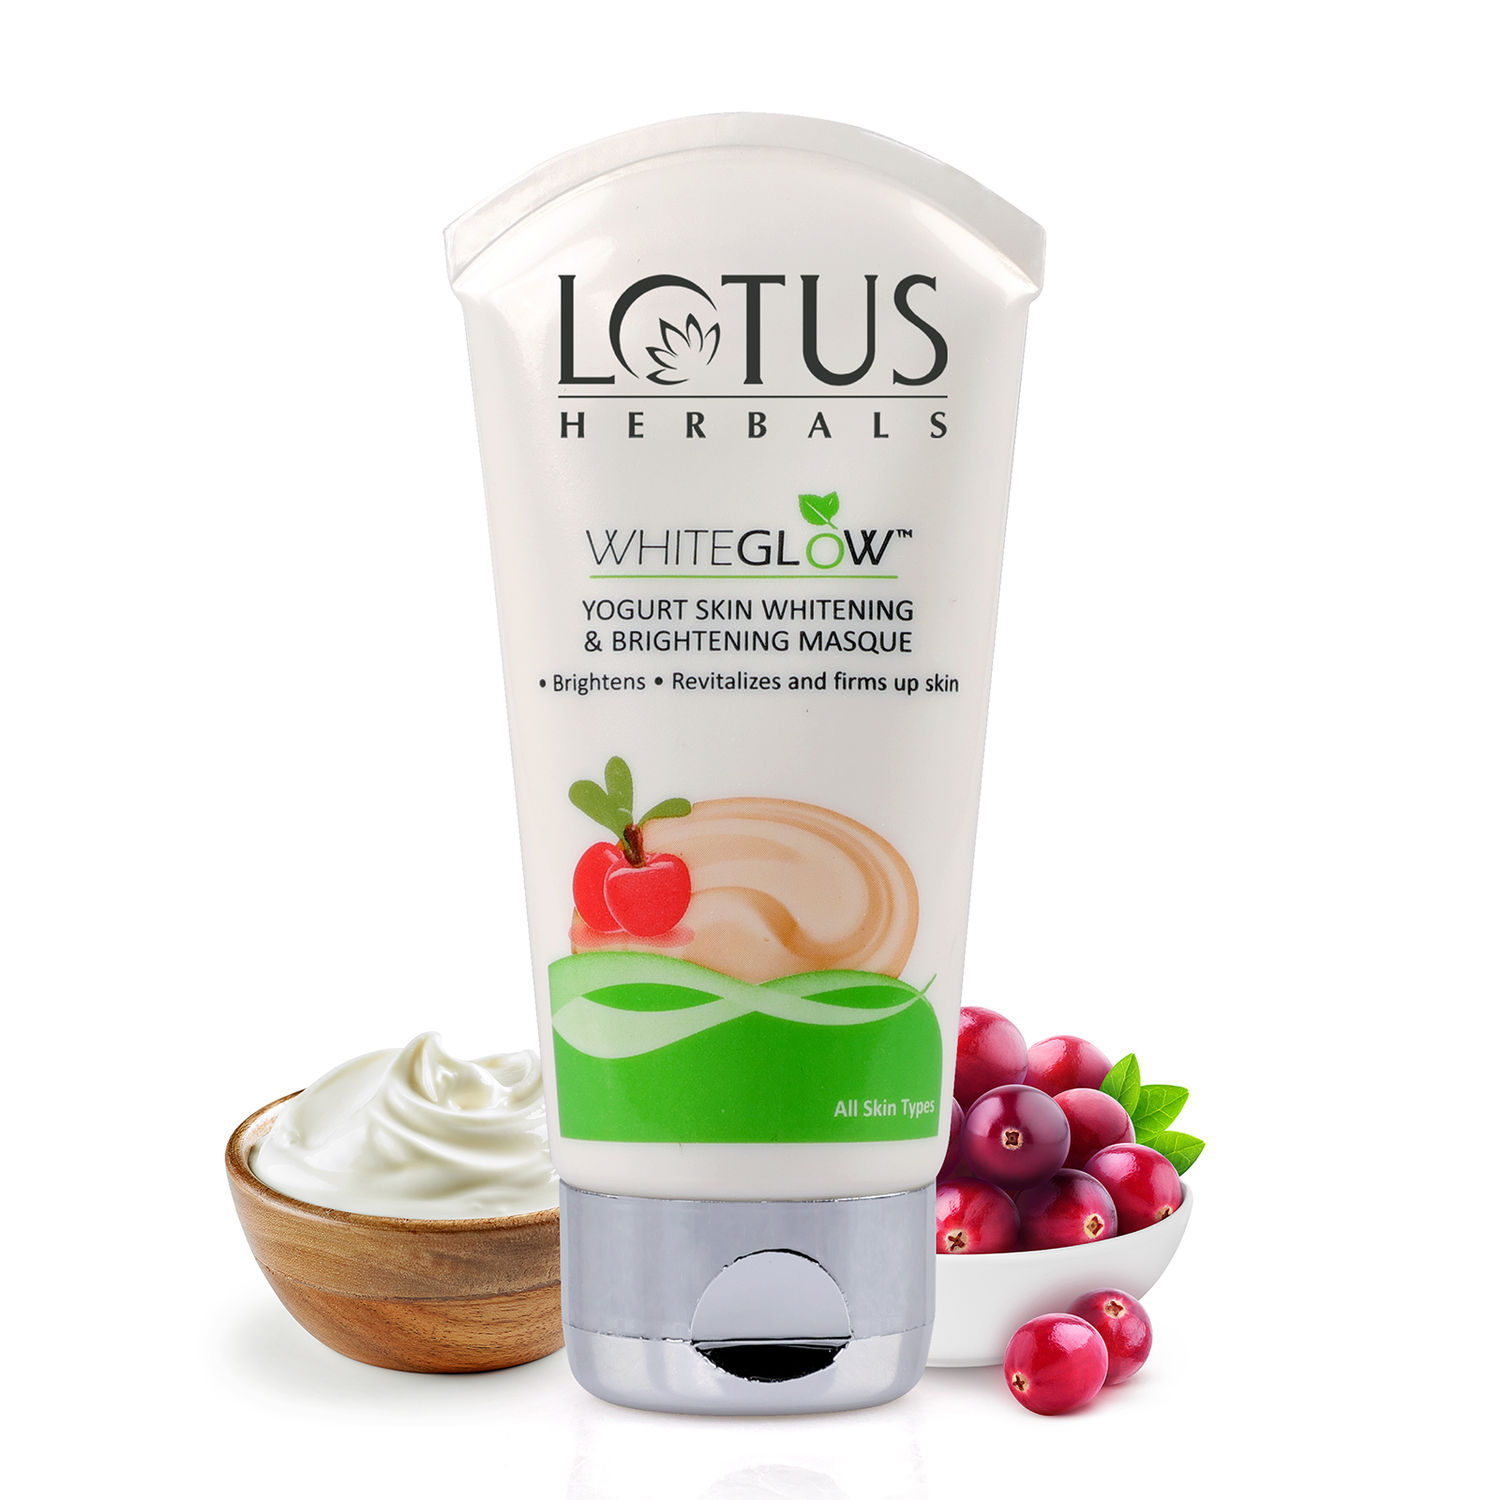 Buy Lotus Herbals Whiteglow Yogurt Skin Whitening & Brightening Mask, 80g - Purplle